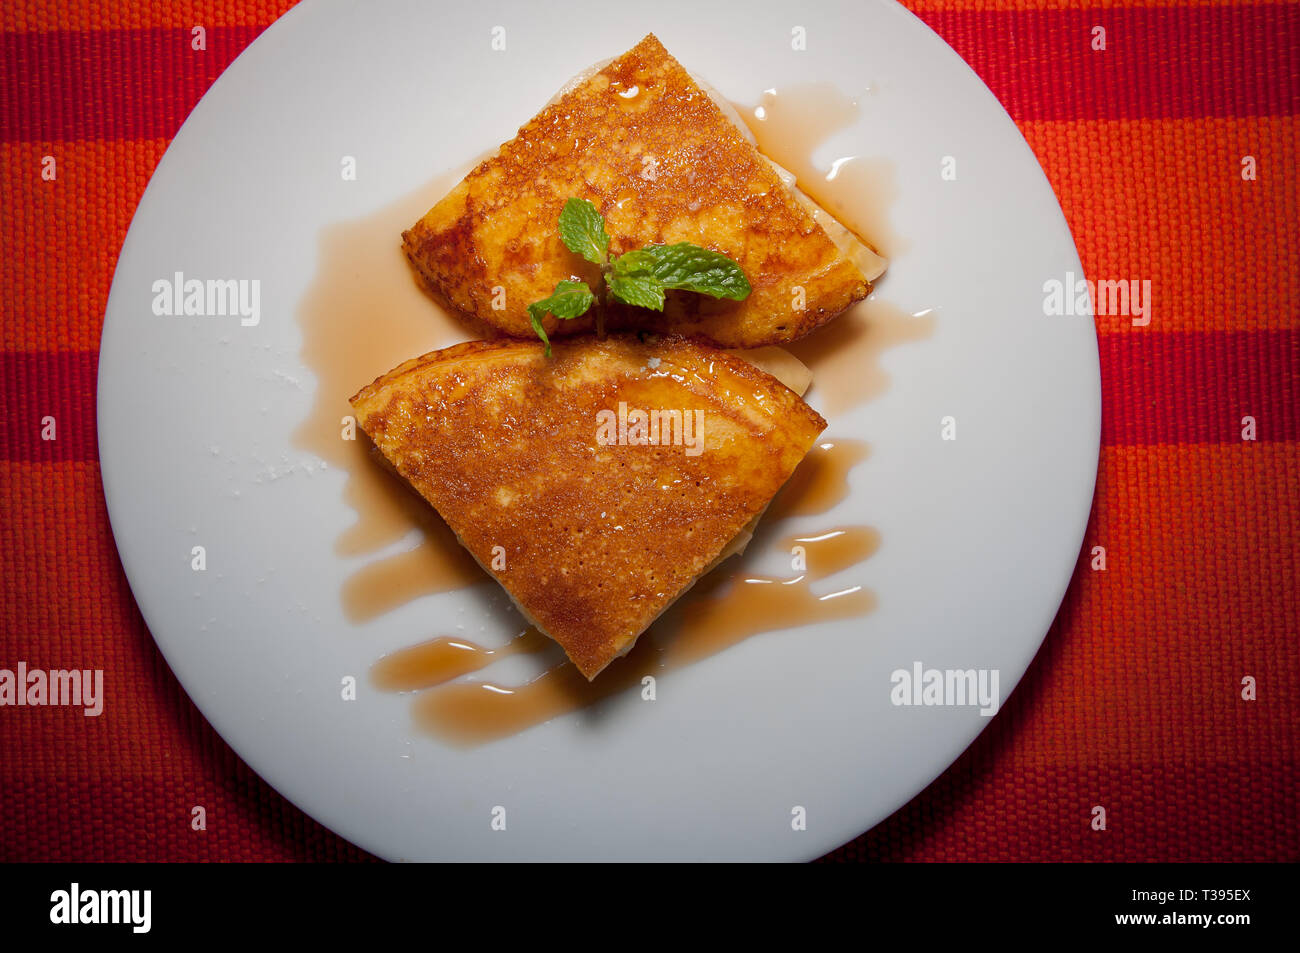 Pancakes on white plate Stock Photo